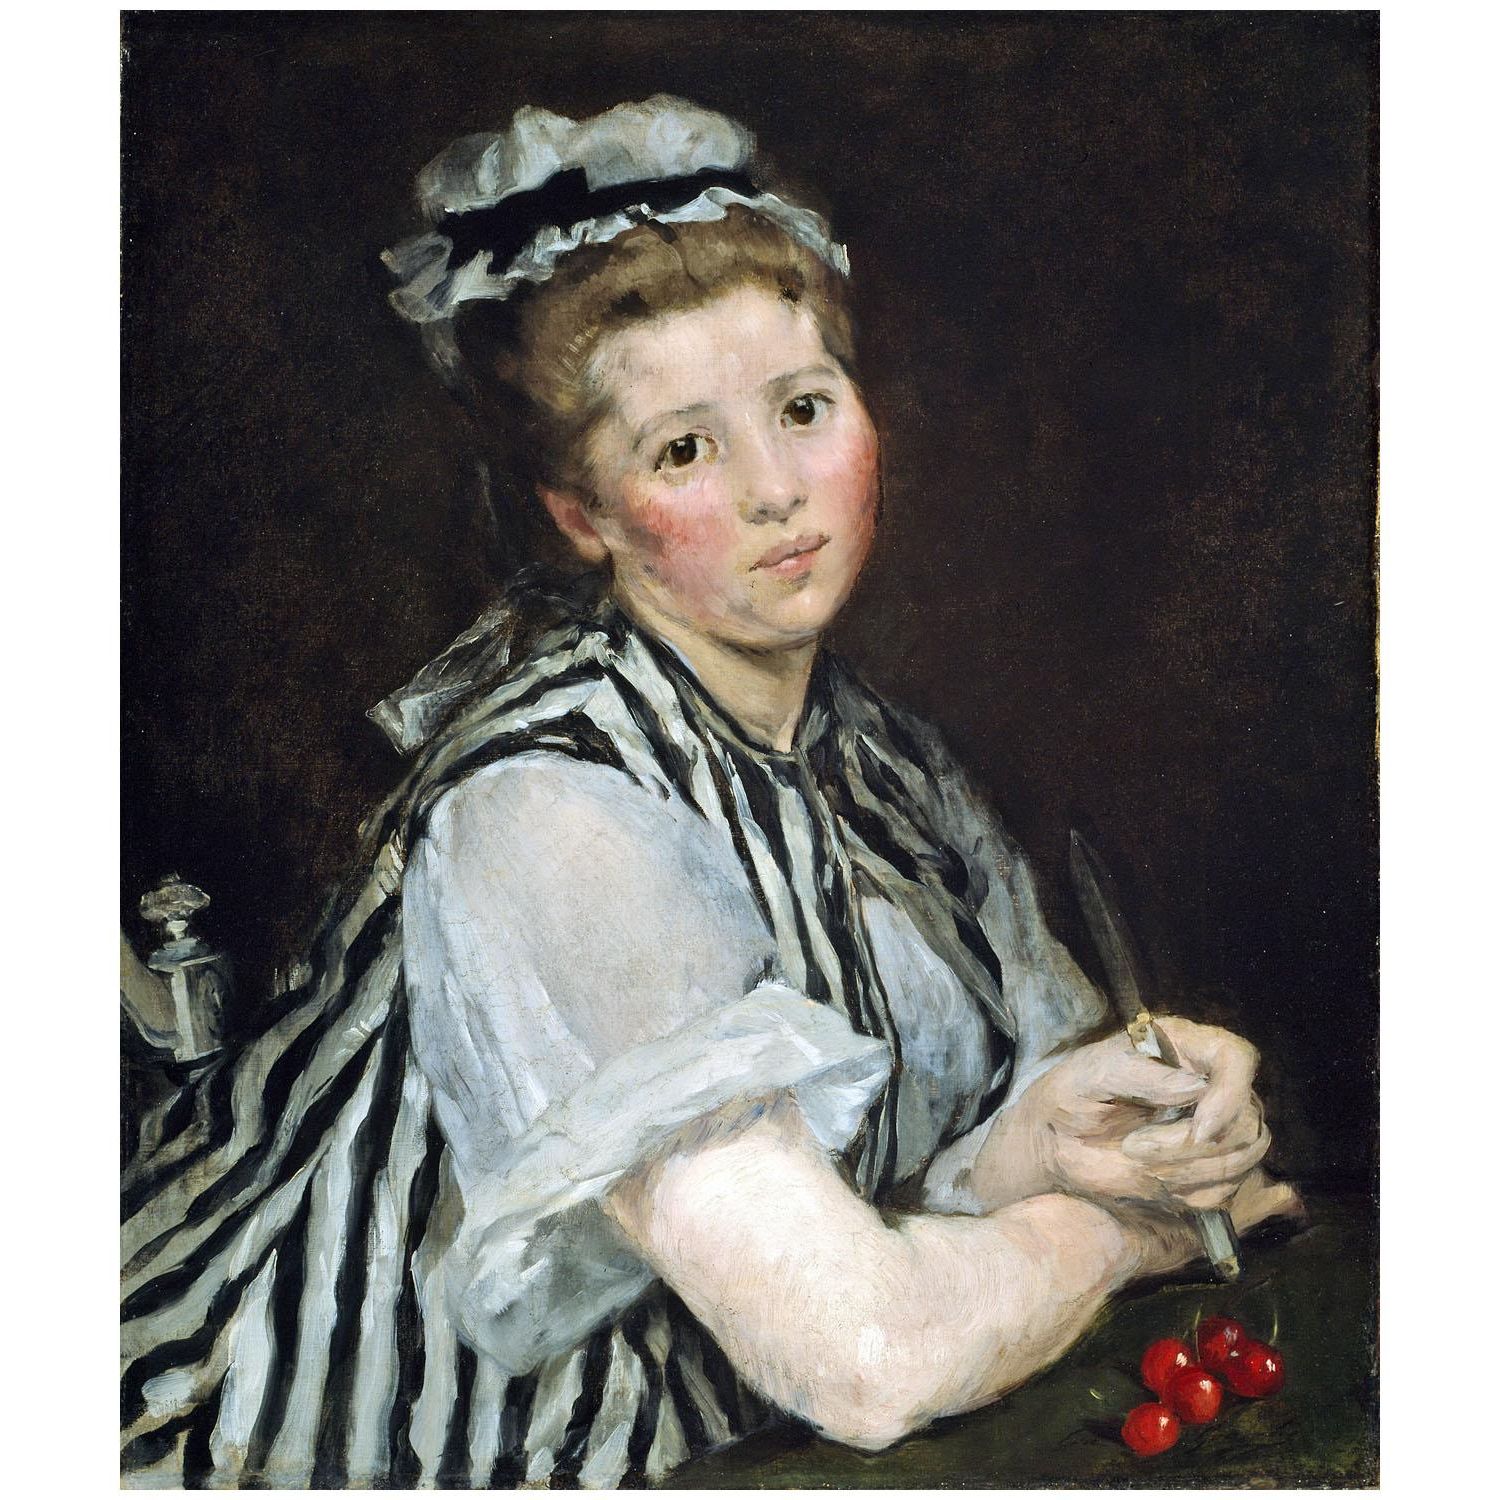 Eva Gonzales. Fille aux cerises. 1870. Art Institute of Chicago